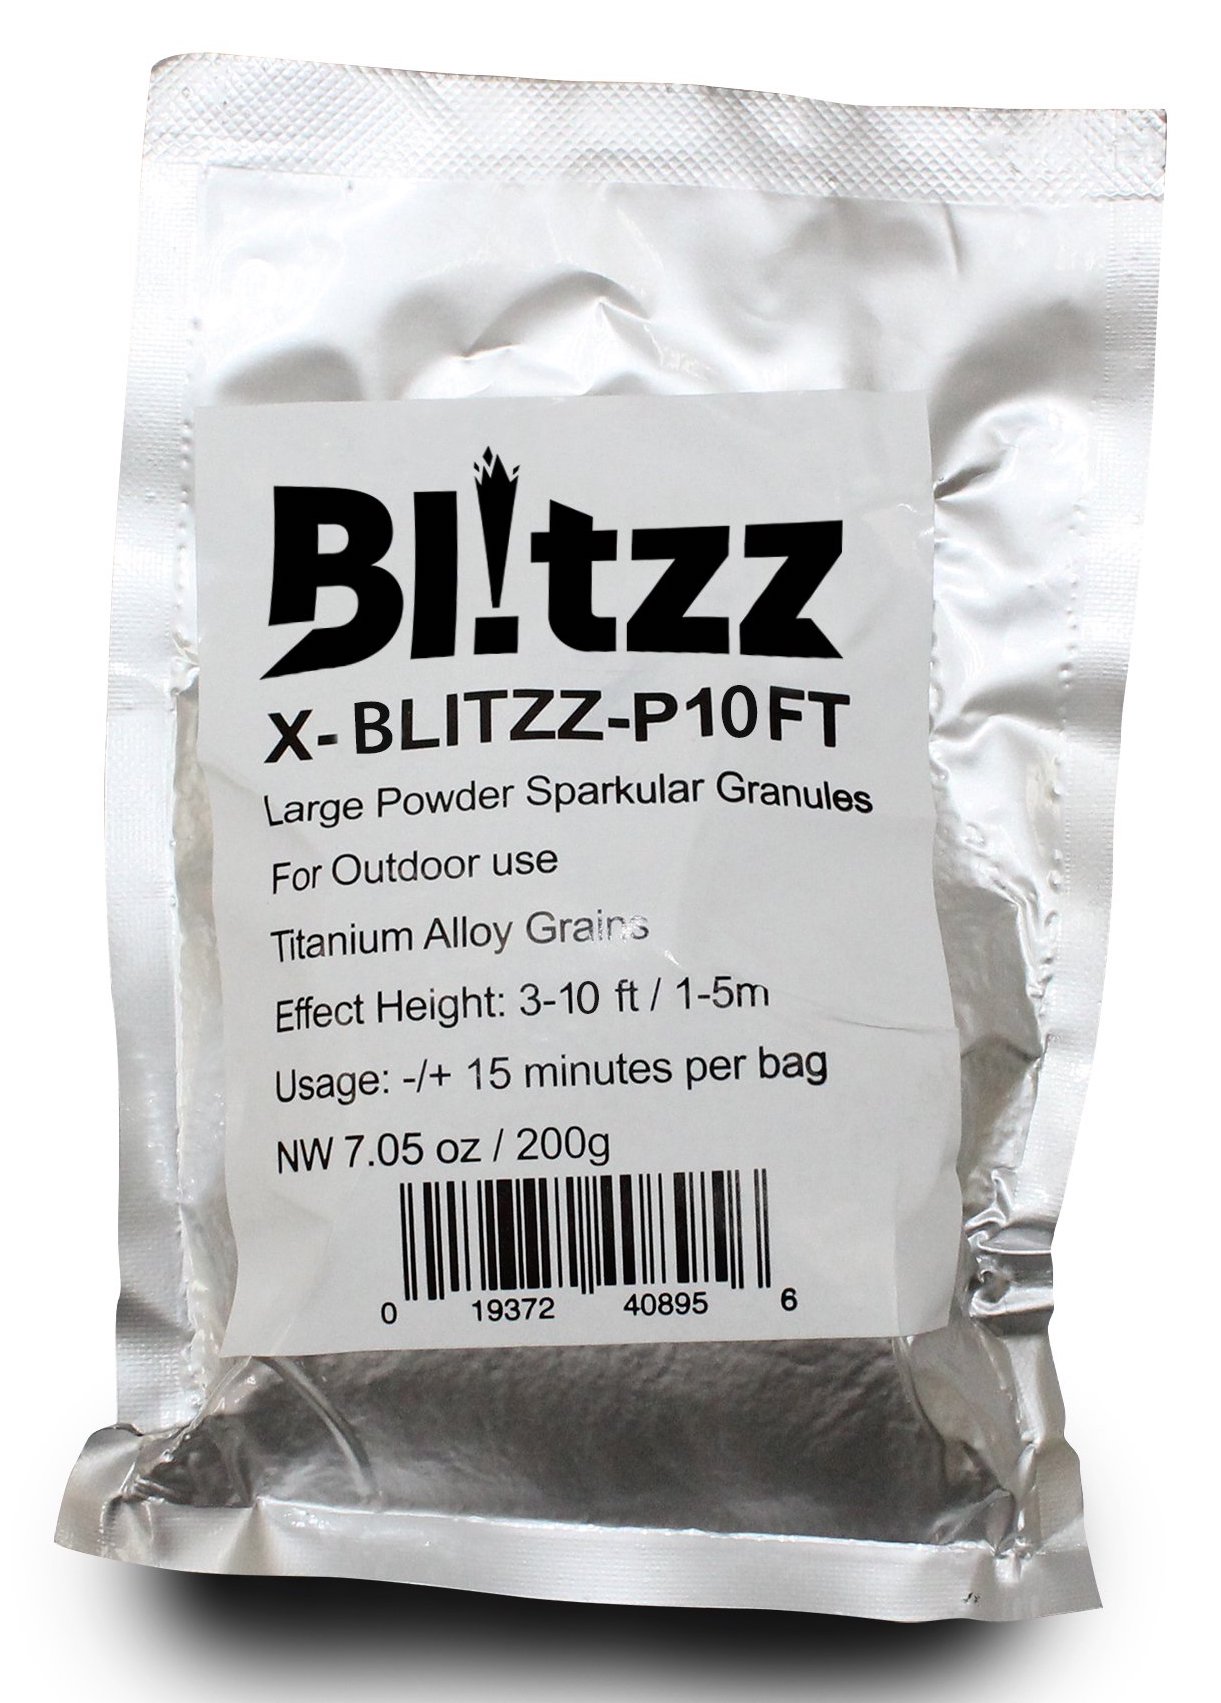 ProX X-BLITZZ-P10FT | Granule Powder for Blitzz Cold Spark